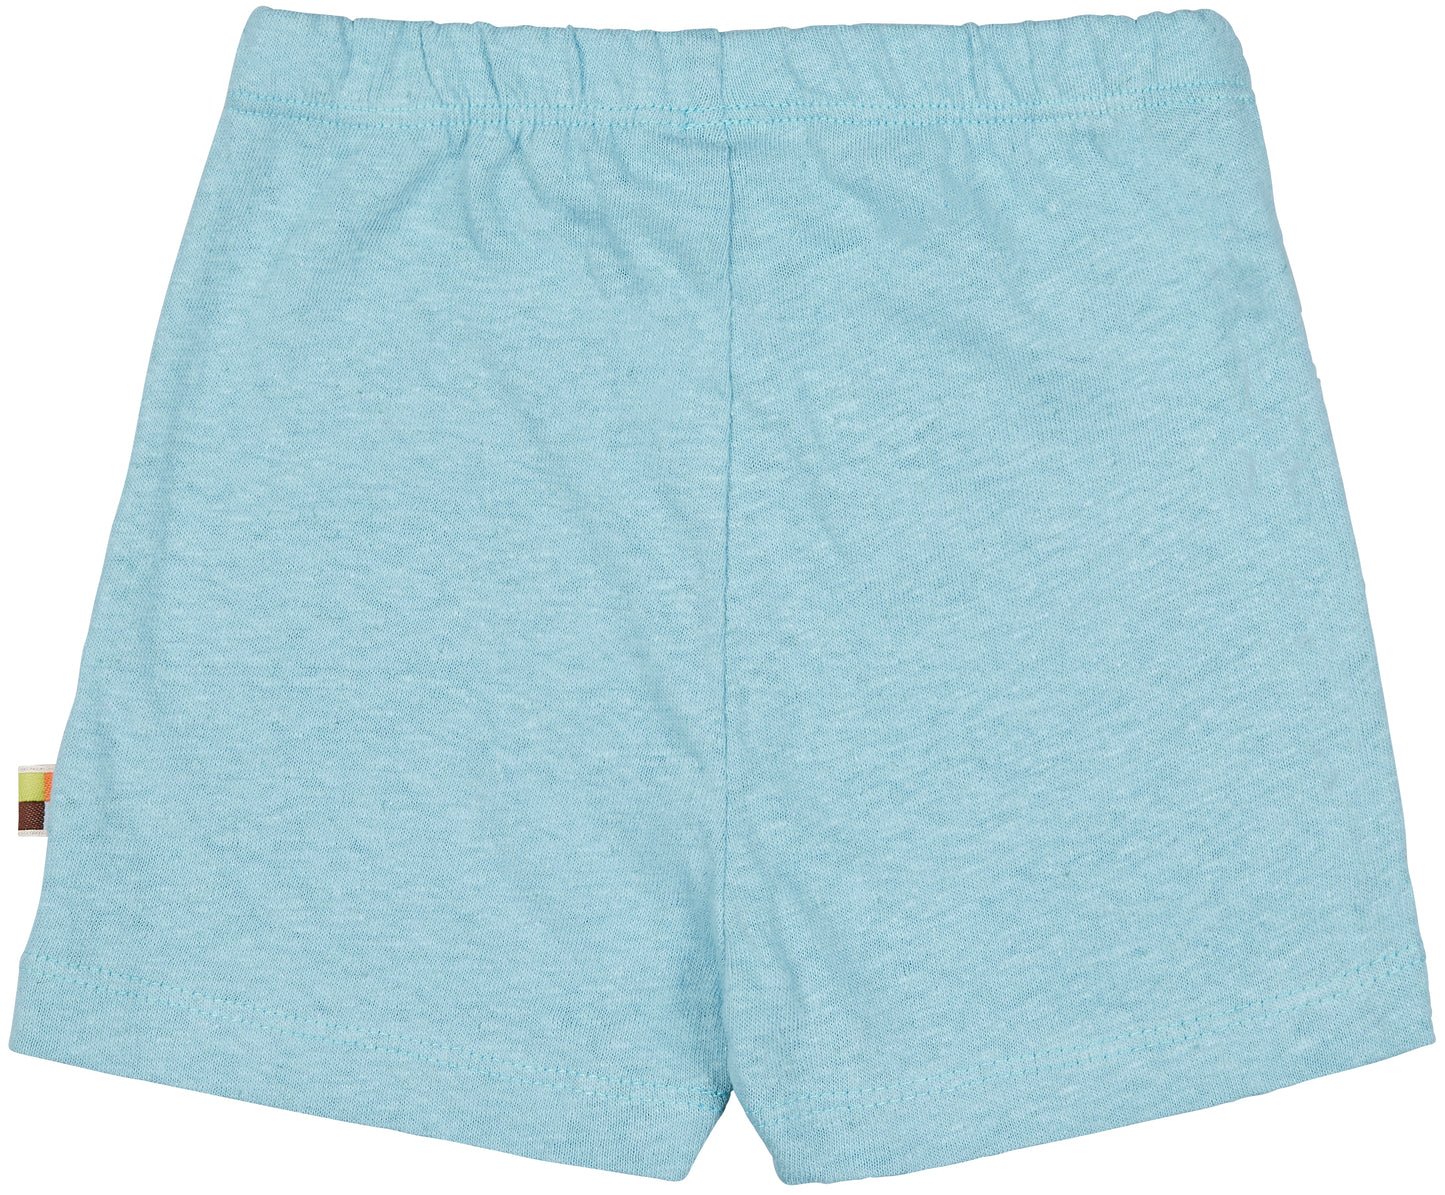 Leinen shorts für Kinder Lagoon